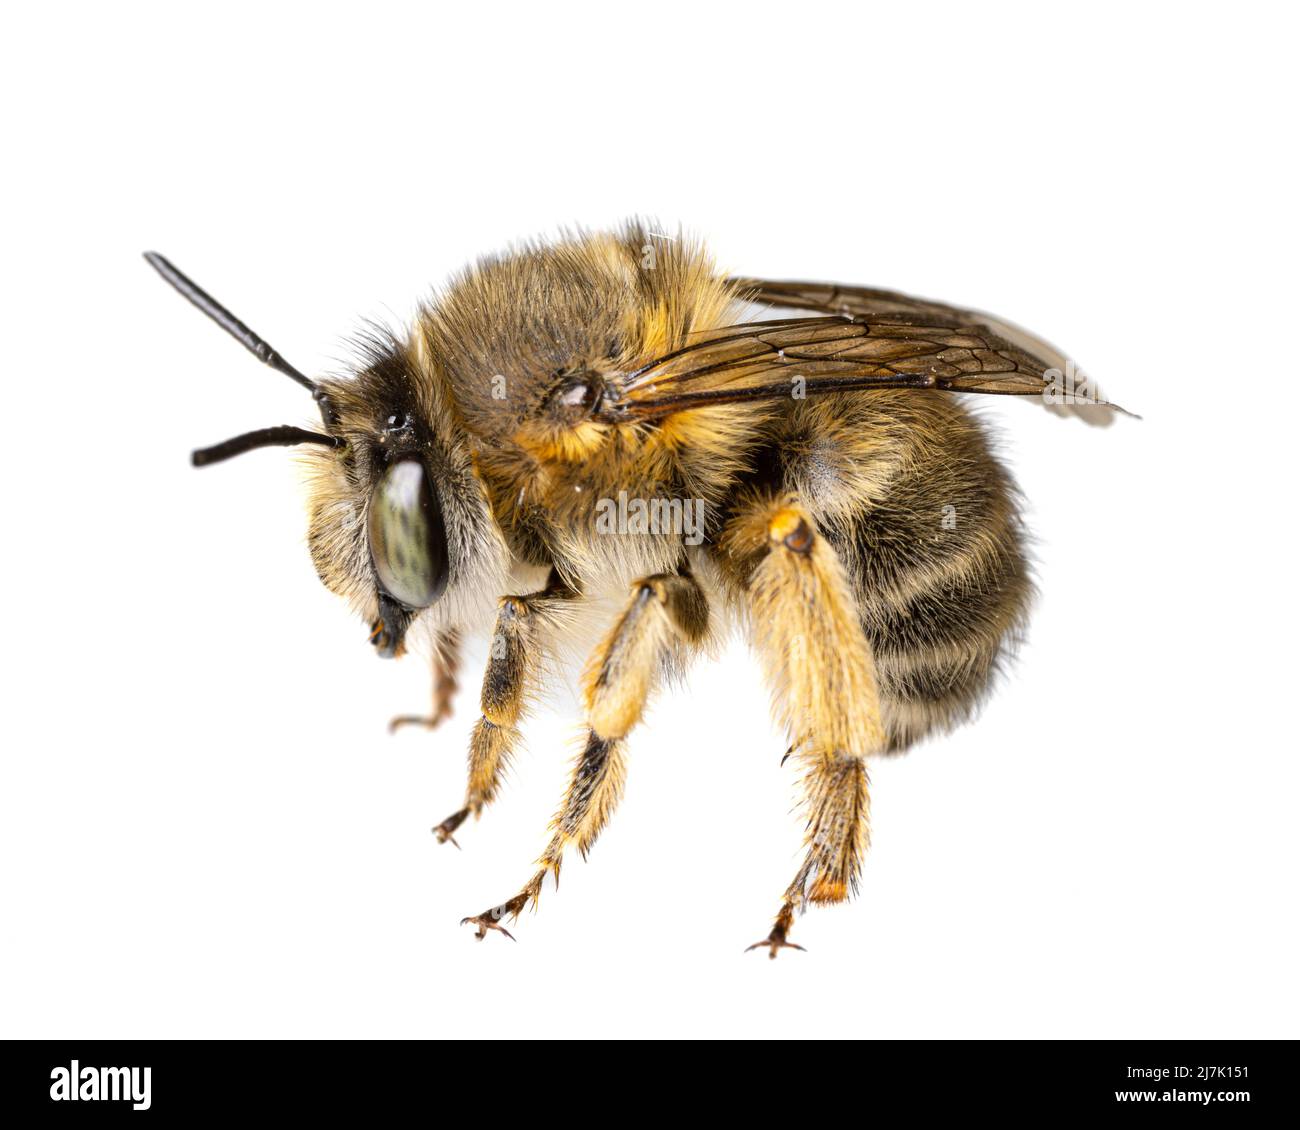 Insekten Europas - Bienen: Makro weiblicher Anthophora crinipes (Pelzbienen) isoliert auf weißem Hintergrund - Details der Beine Stockfoto